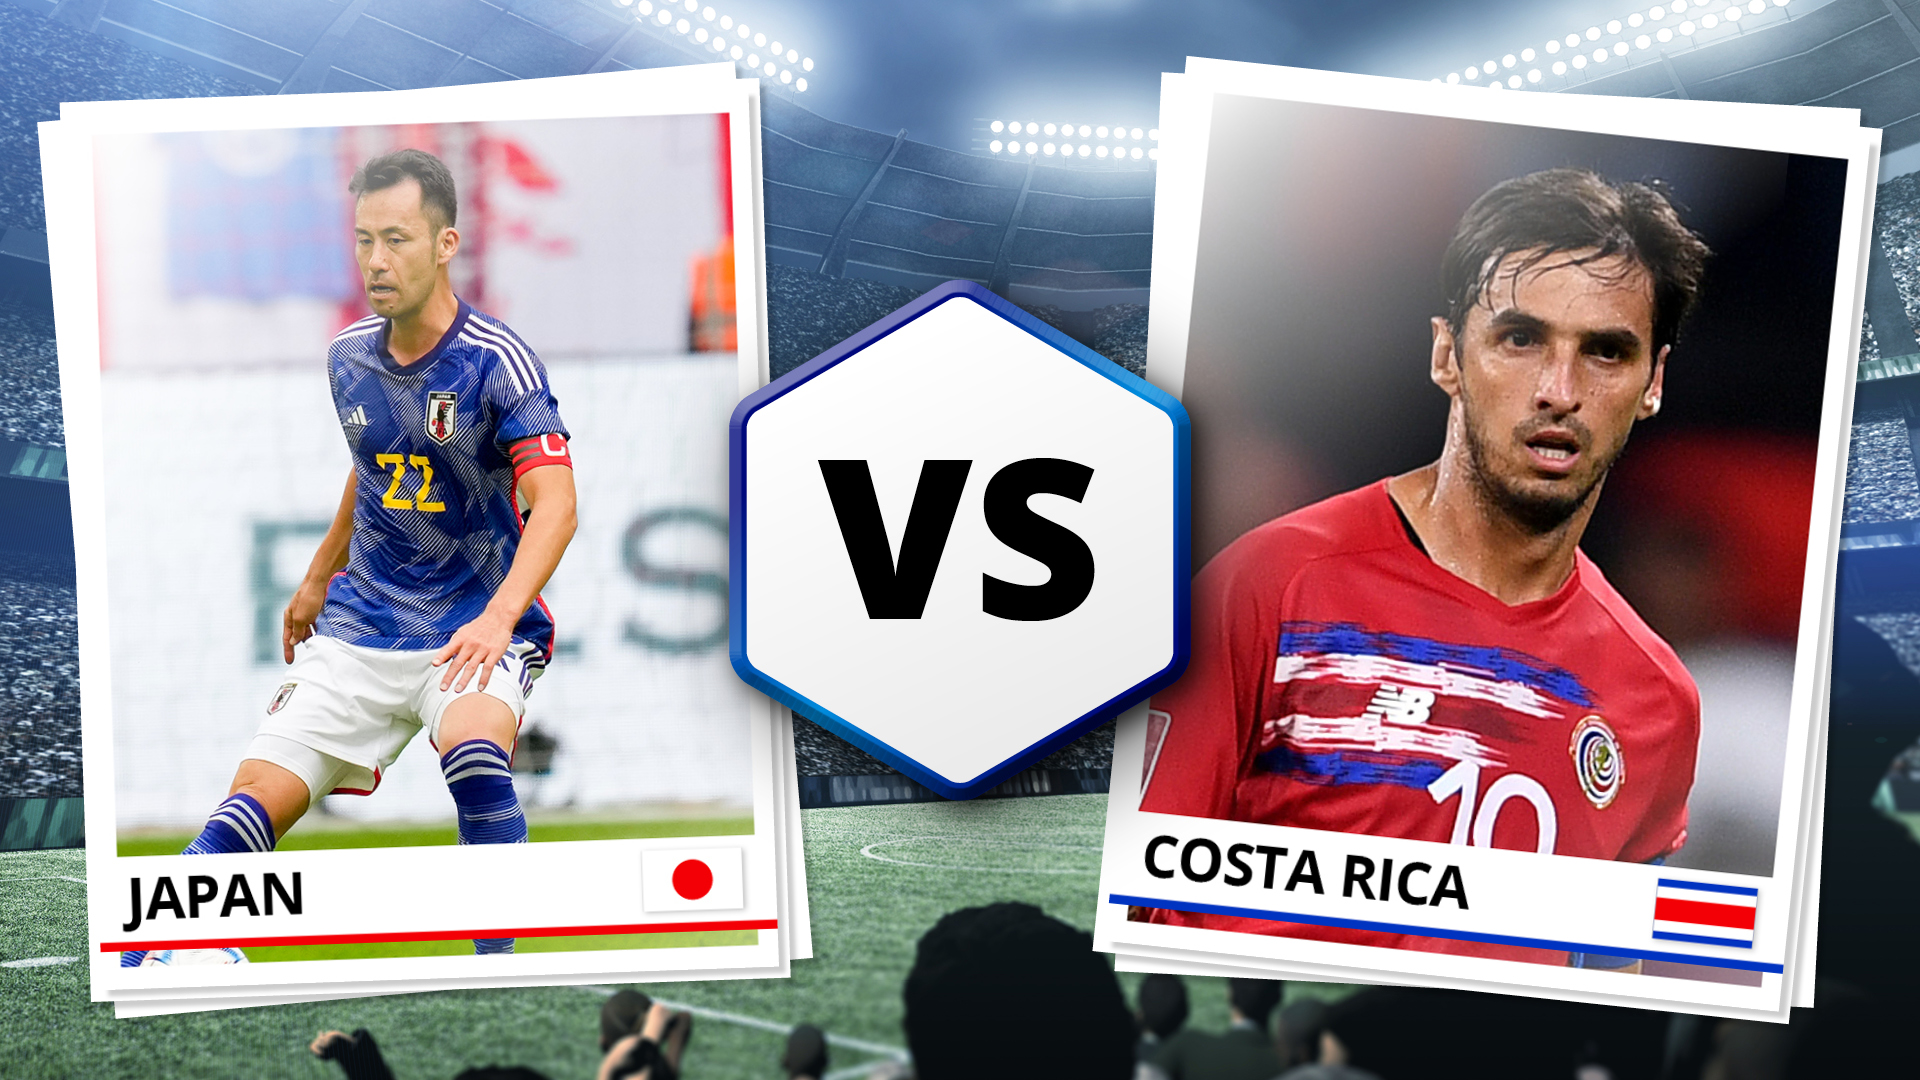 Costa Rica vs Japan live Streaming